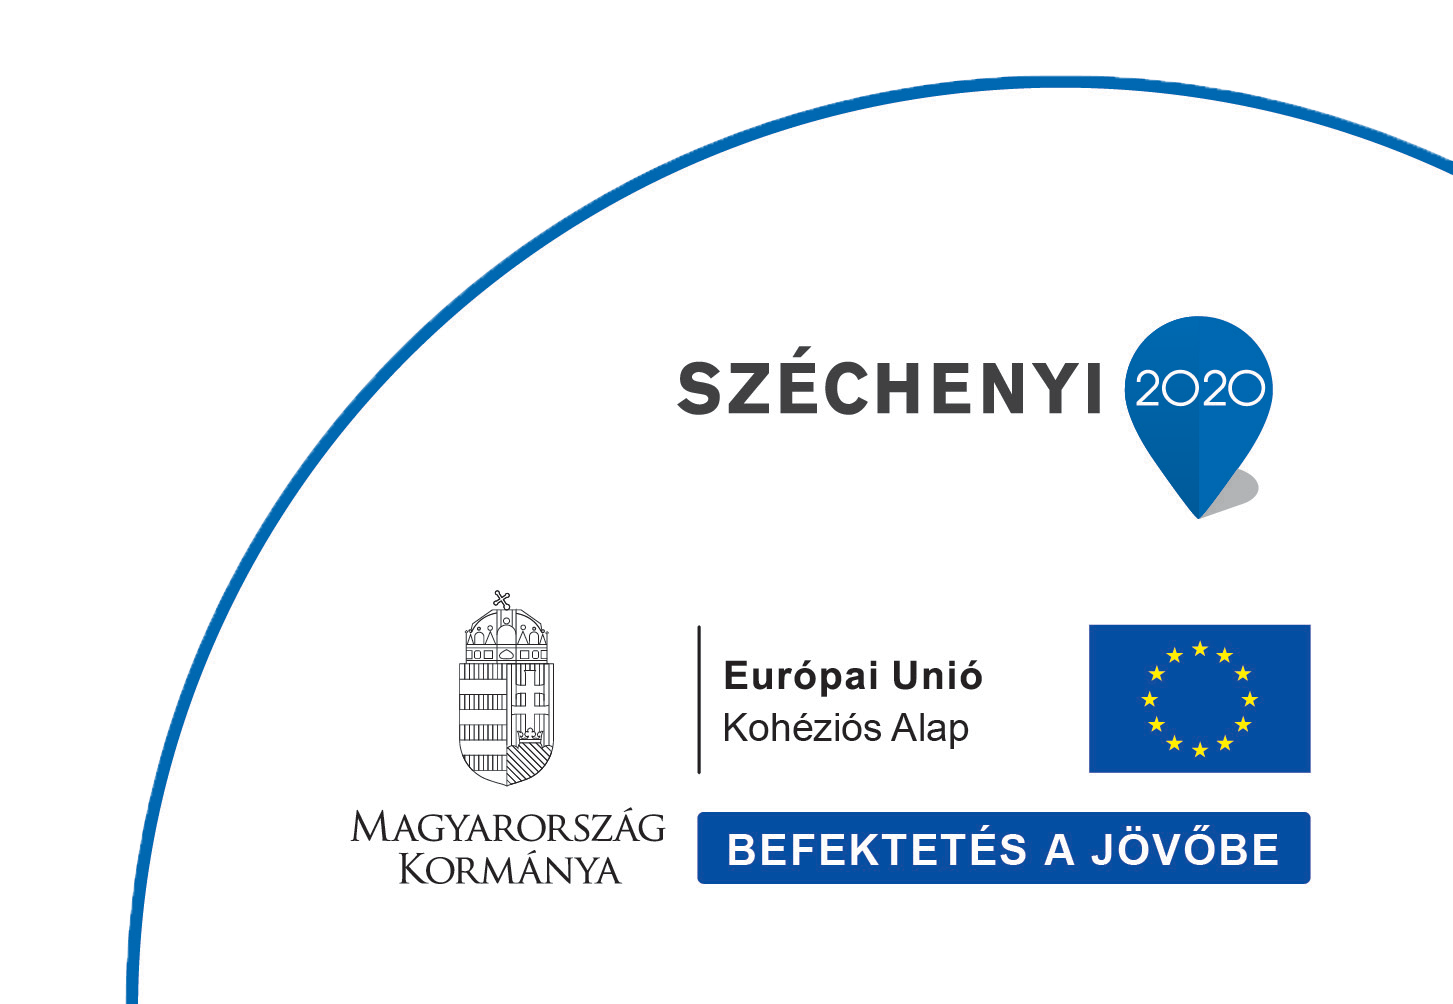 Sz�chenyi 2020 Koh�zi�s alap logo